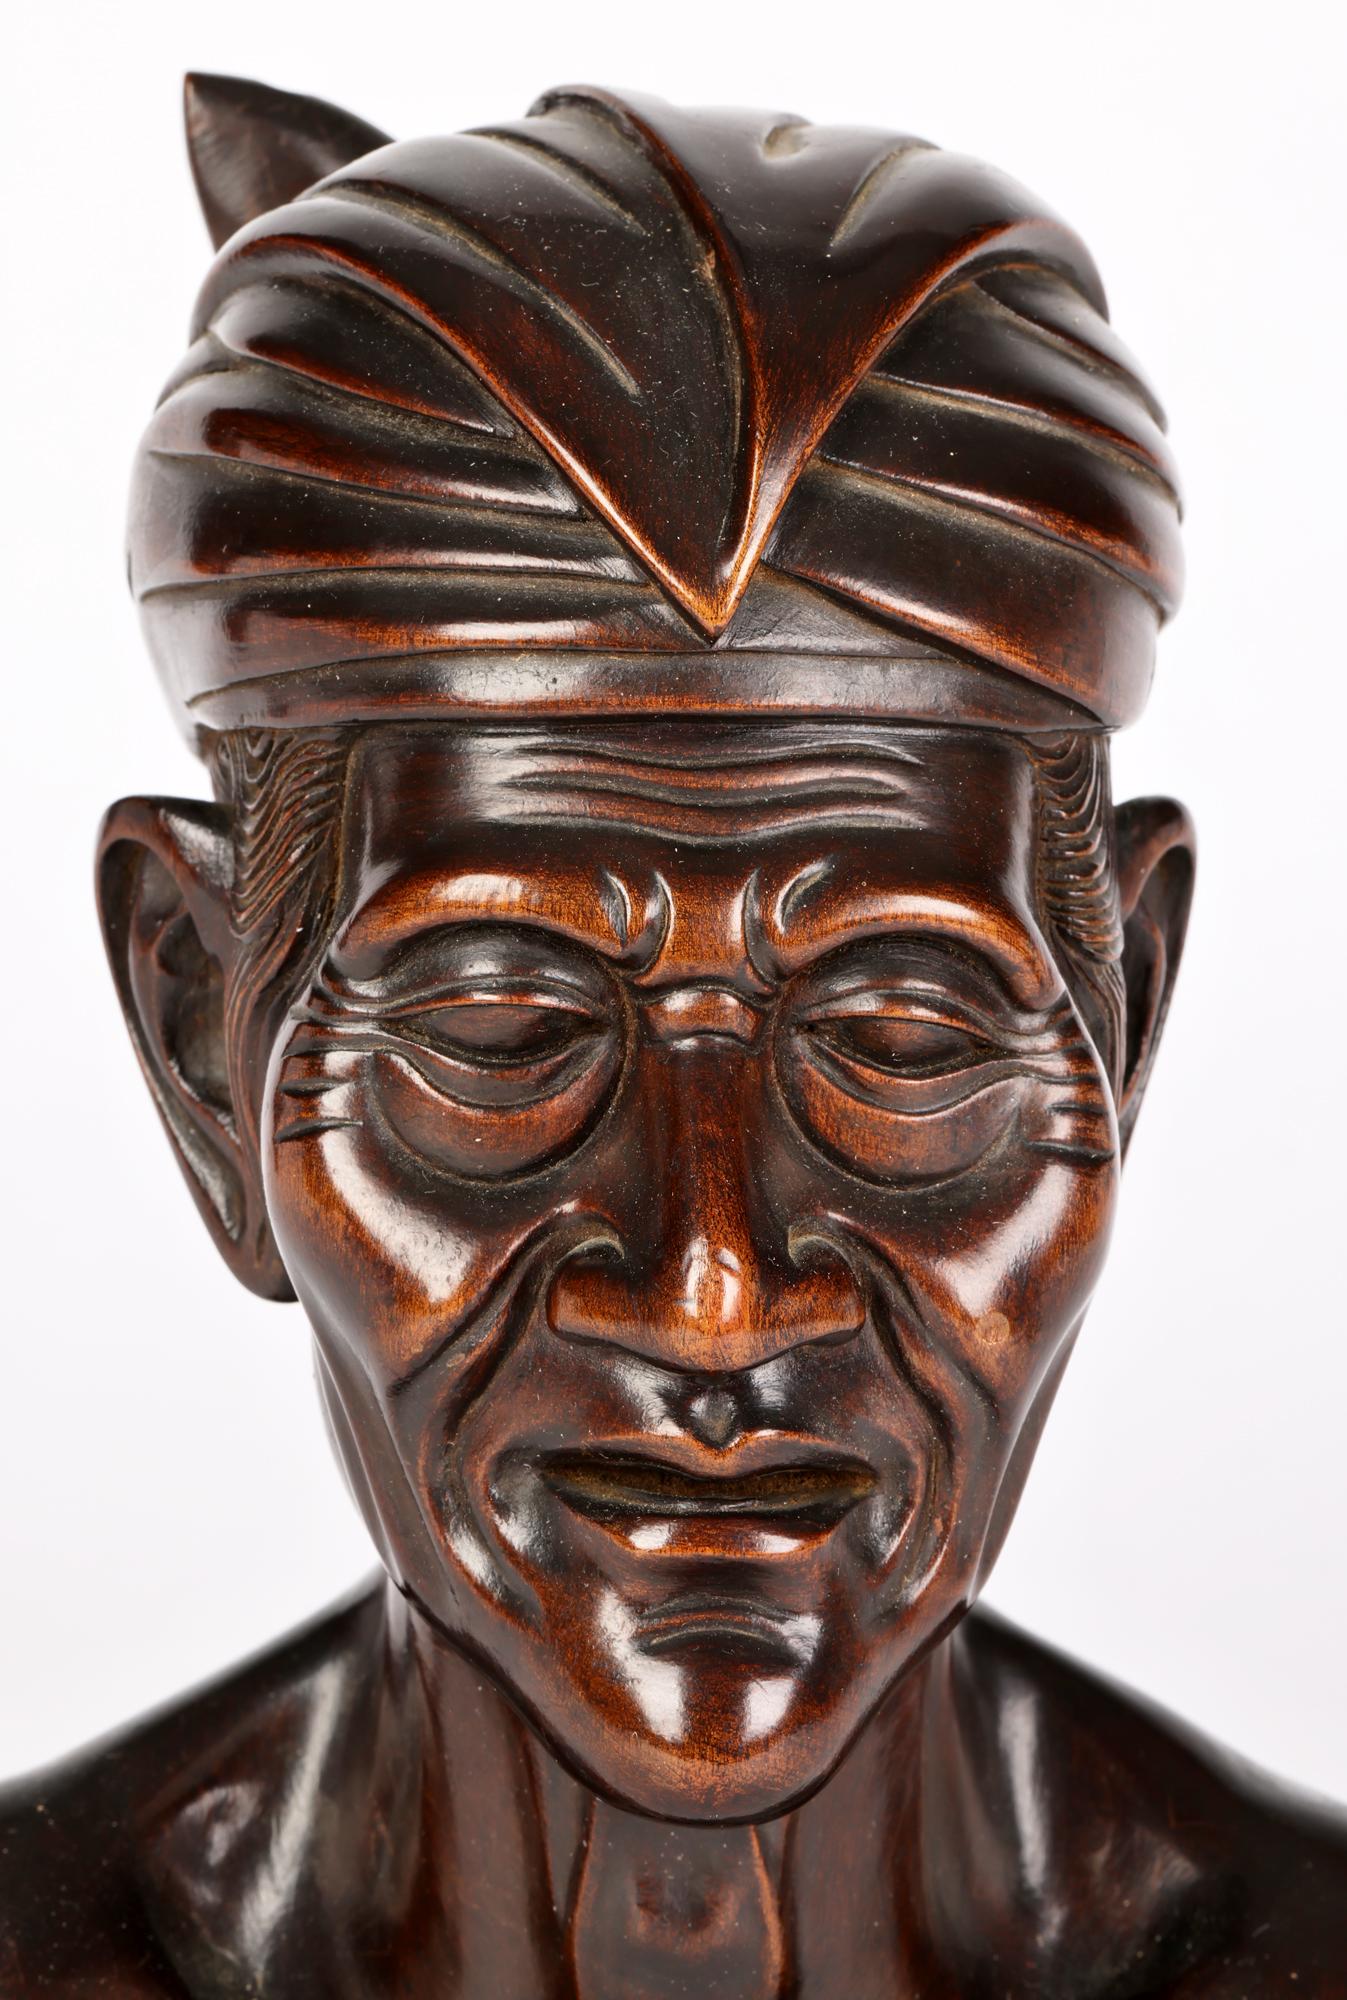 Un buste en bois bien sculpté d'un homme âgé, réalisé par un artiste balinais vers le milieu du 20e siècle. Le buste est sculpté dans une seule pièce de bois et est bien sculpté avec de bons détails représentant l'homme portant une coiffe